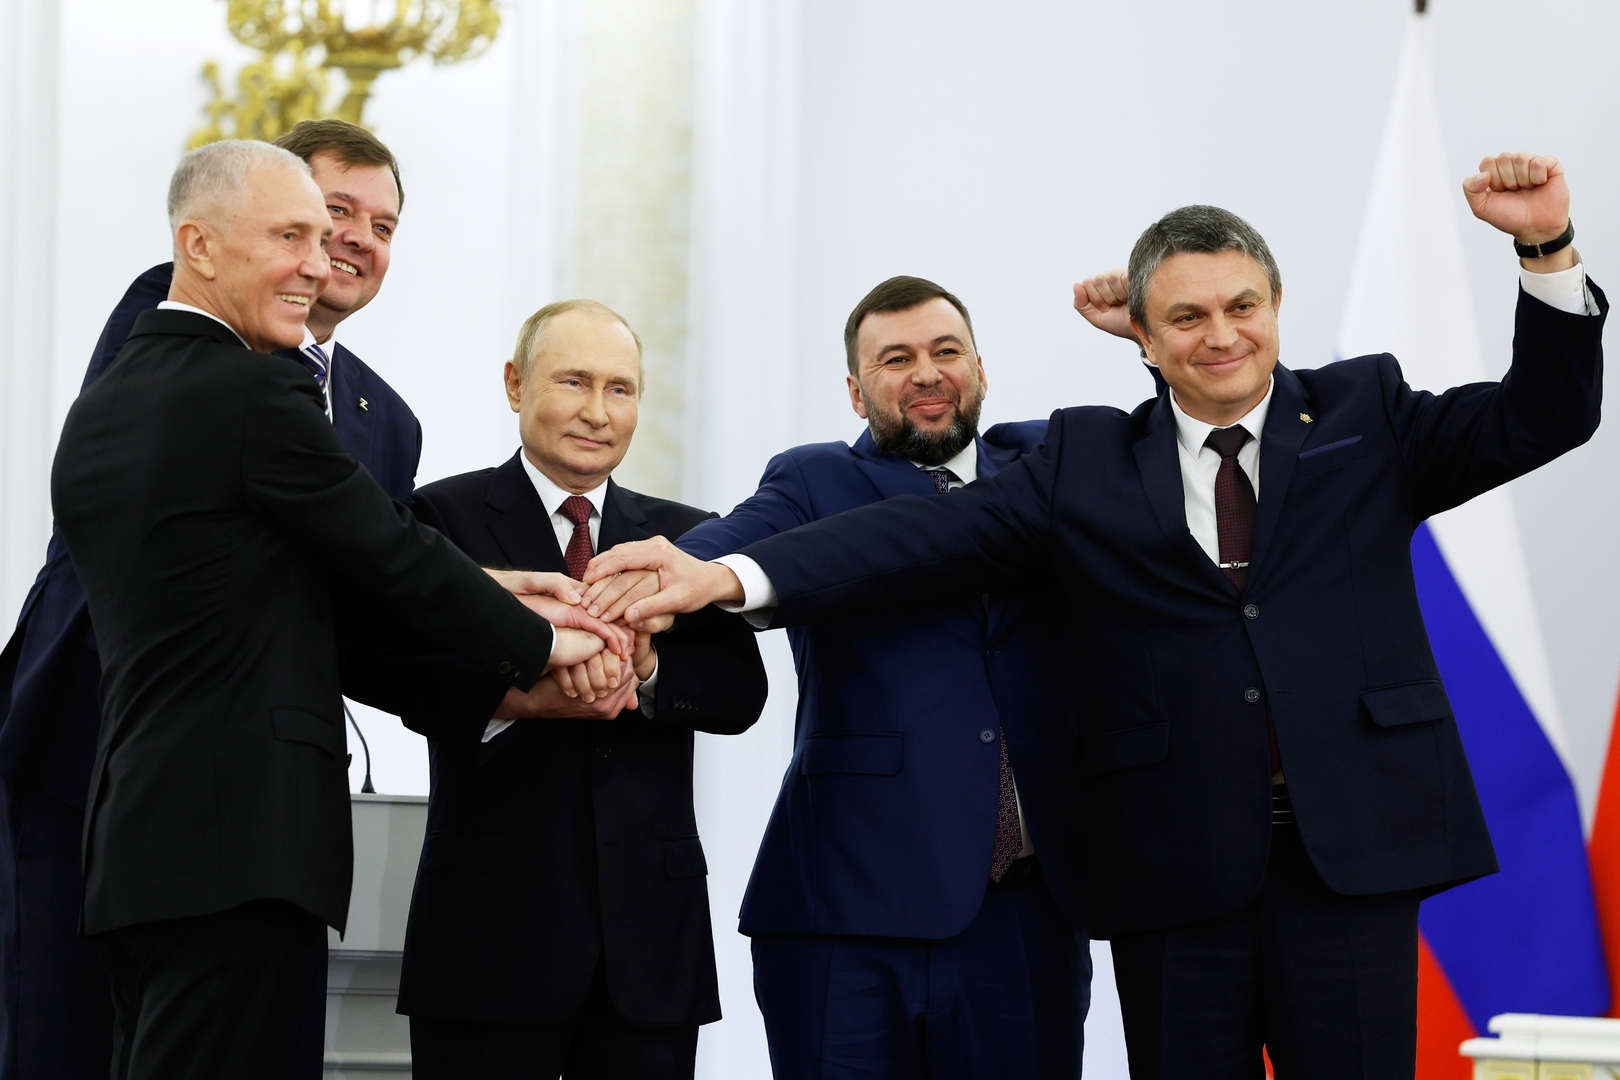 النص الكامل لخطاب فلاديمير بوتين لمناسبة انضمام دونيتسك ولوغانسك وزابوروجيه وخيرسون إلى روسيا